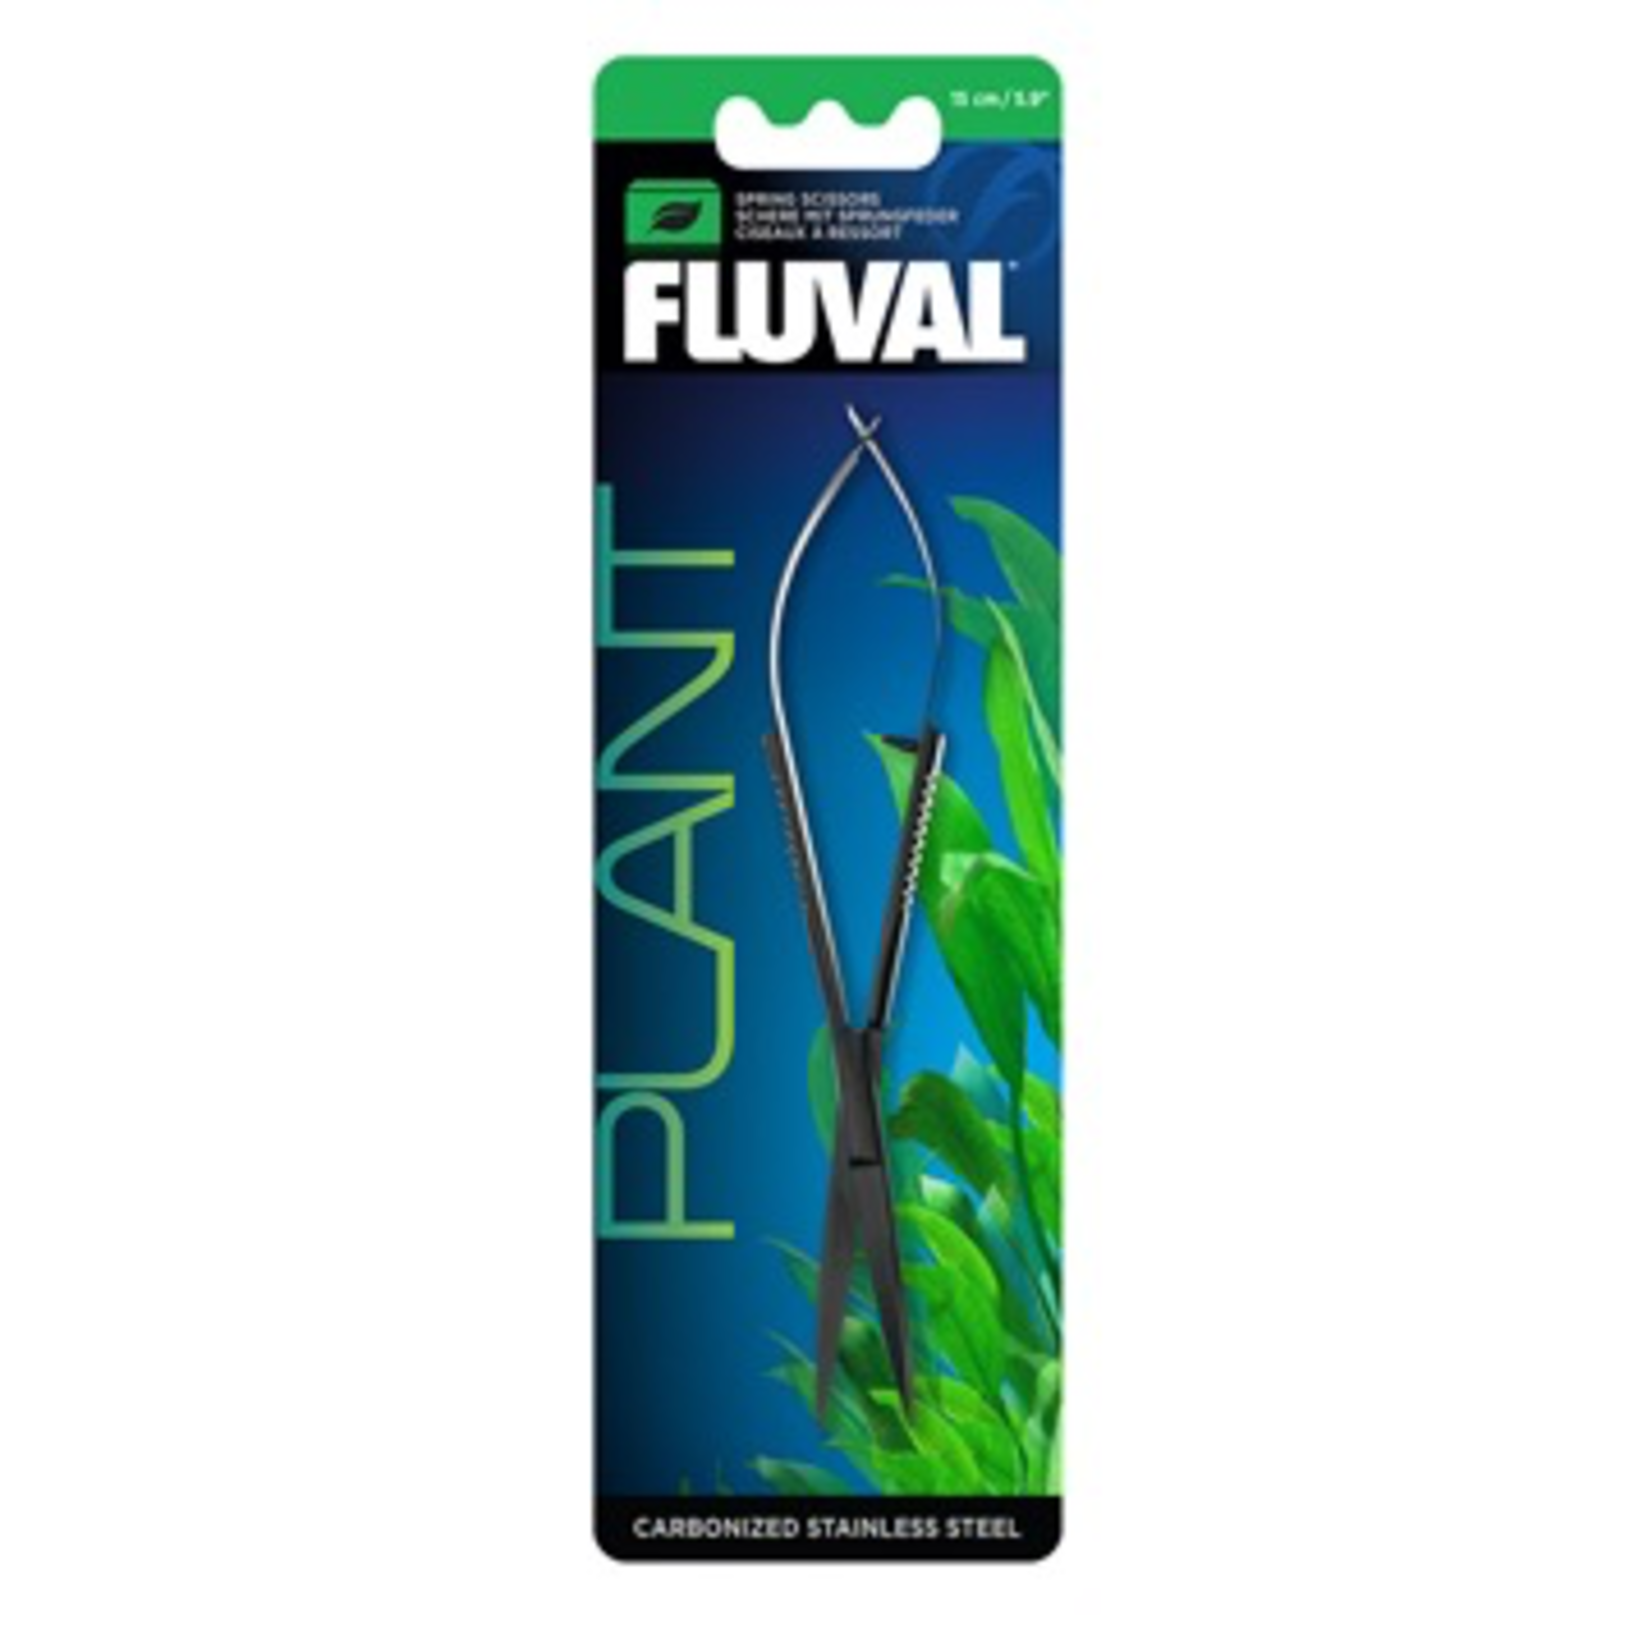 FLUVAL (W) Fluval Spring Scissors - 15 cm (5.9 in)